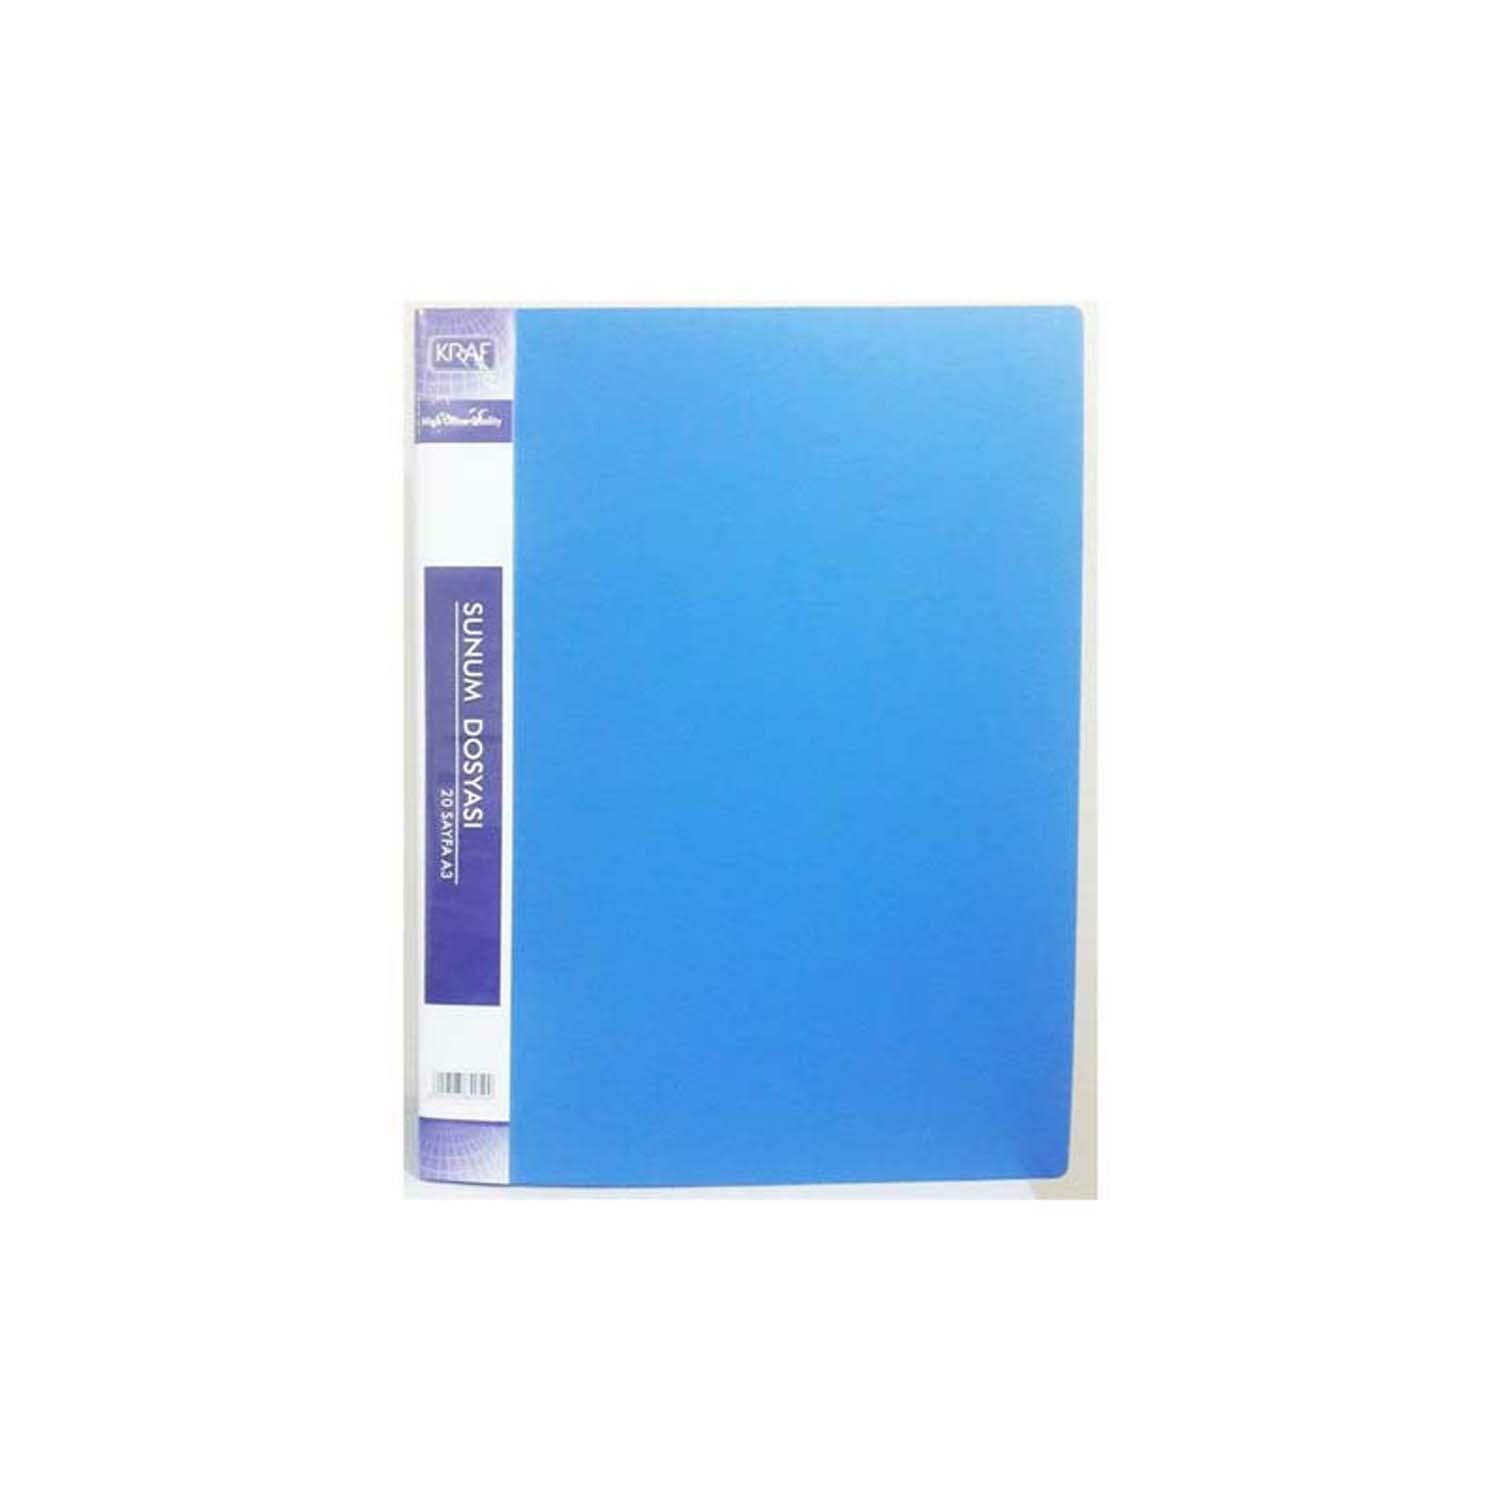 Kraf Sunum Dosyası 40Lı F40Ak Mavi